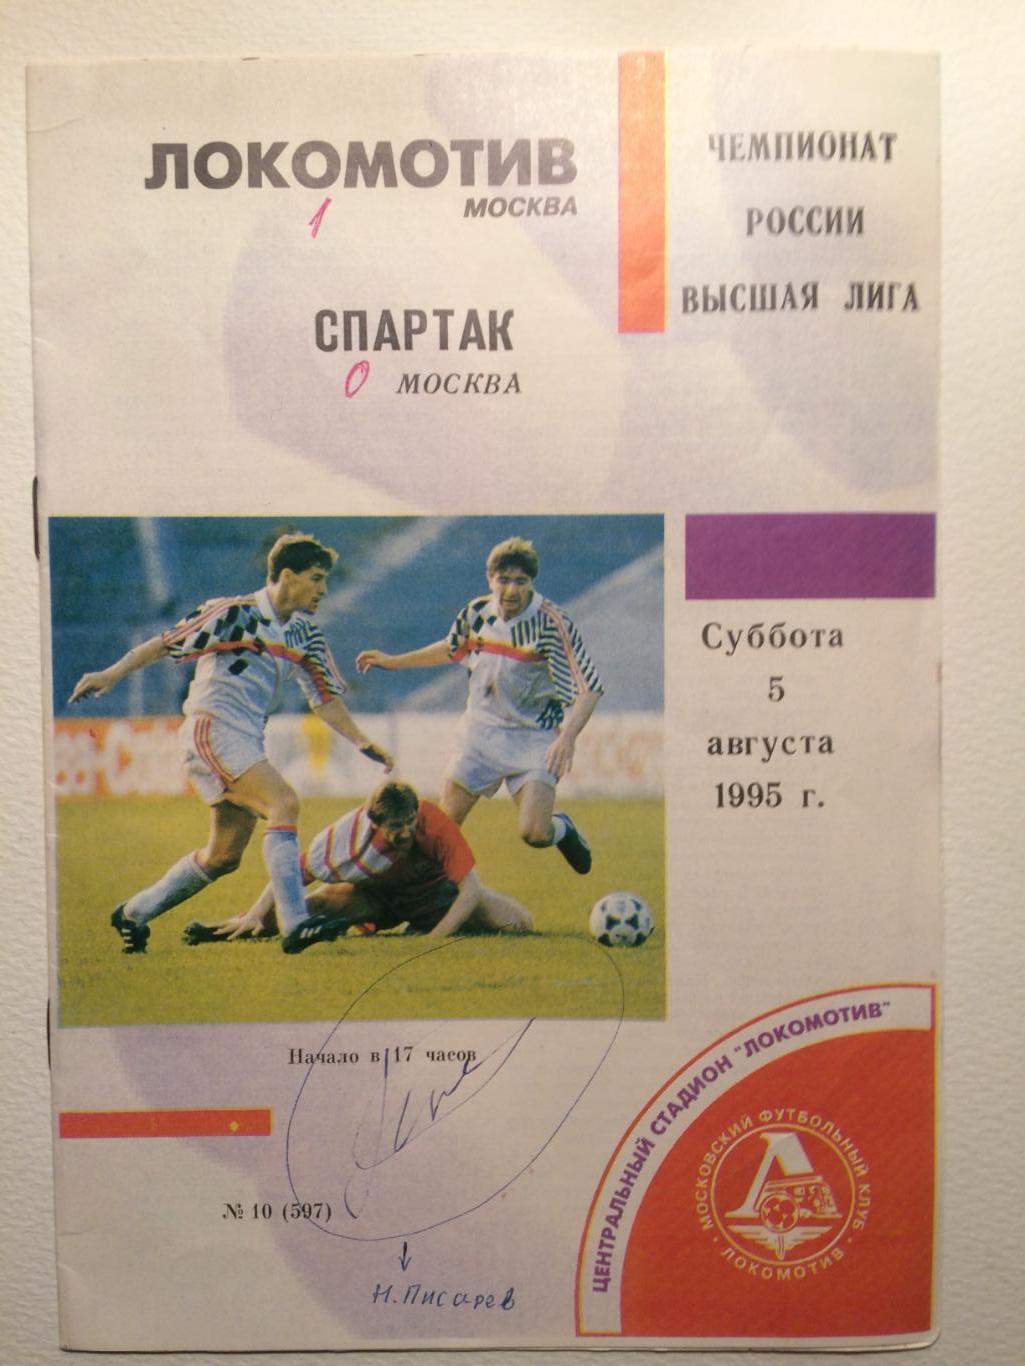 Локомотив-Спартак Москва Чемпионат России 05.08.1995